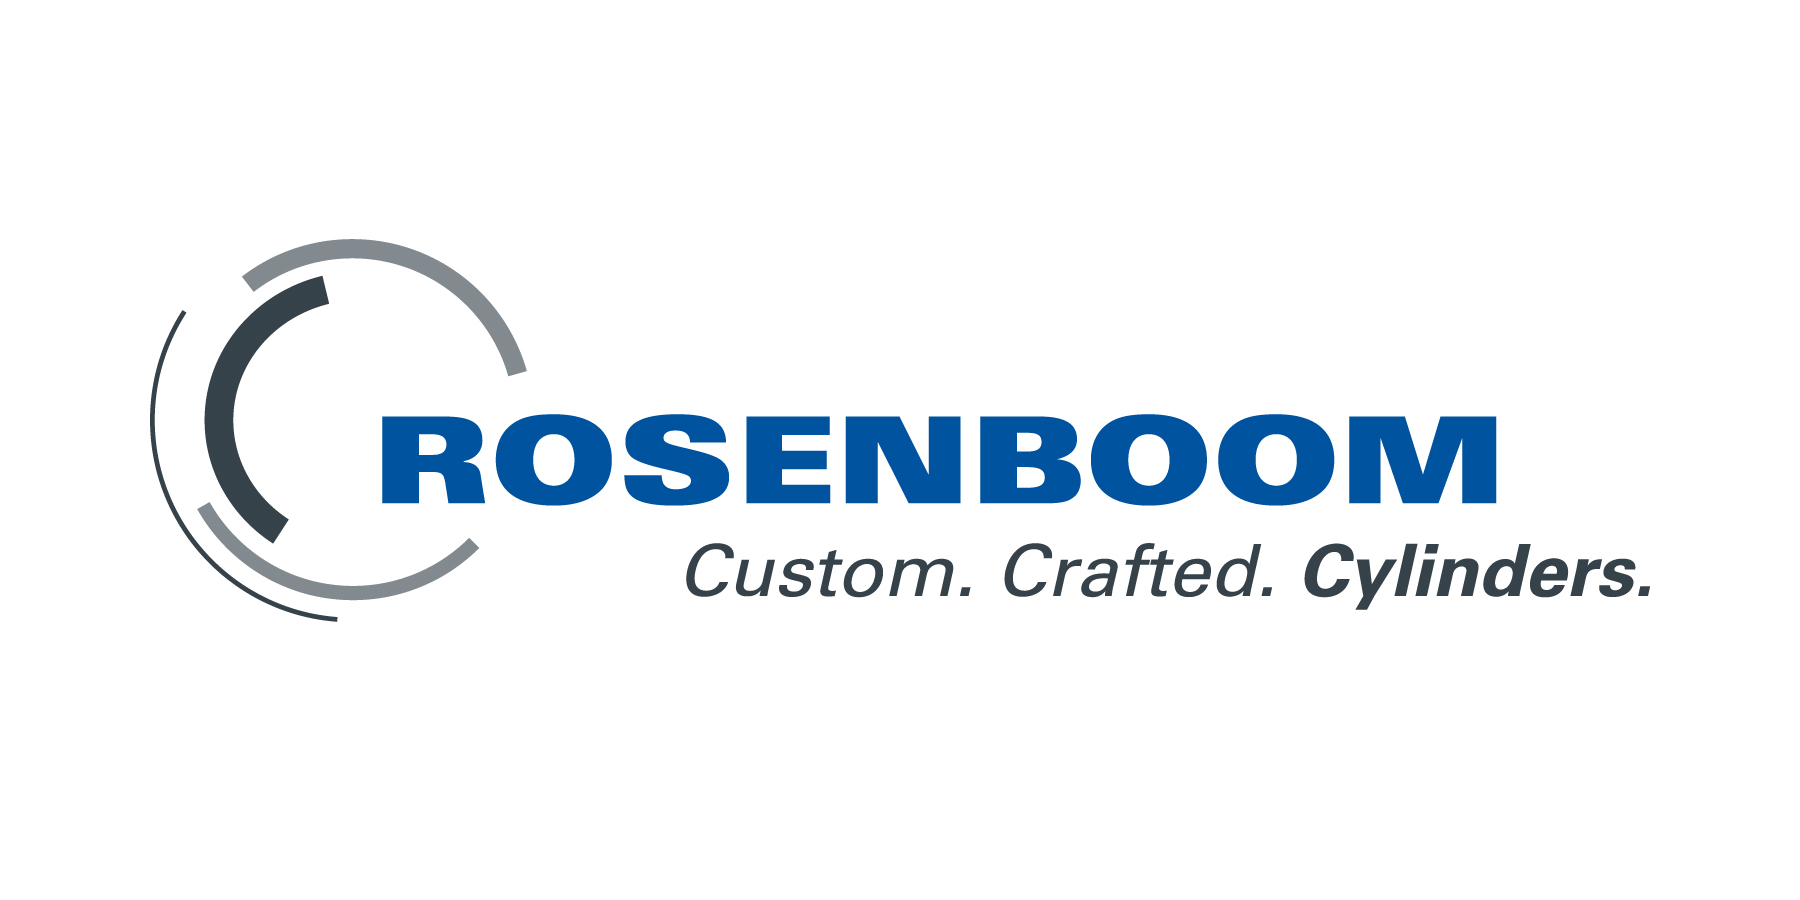 Rosenboom's Image